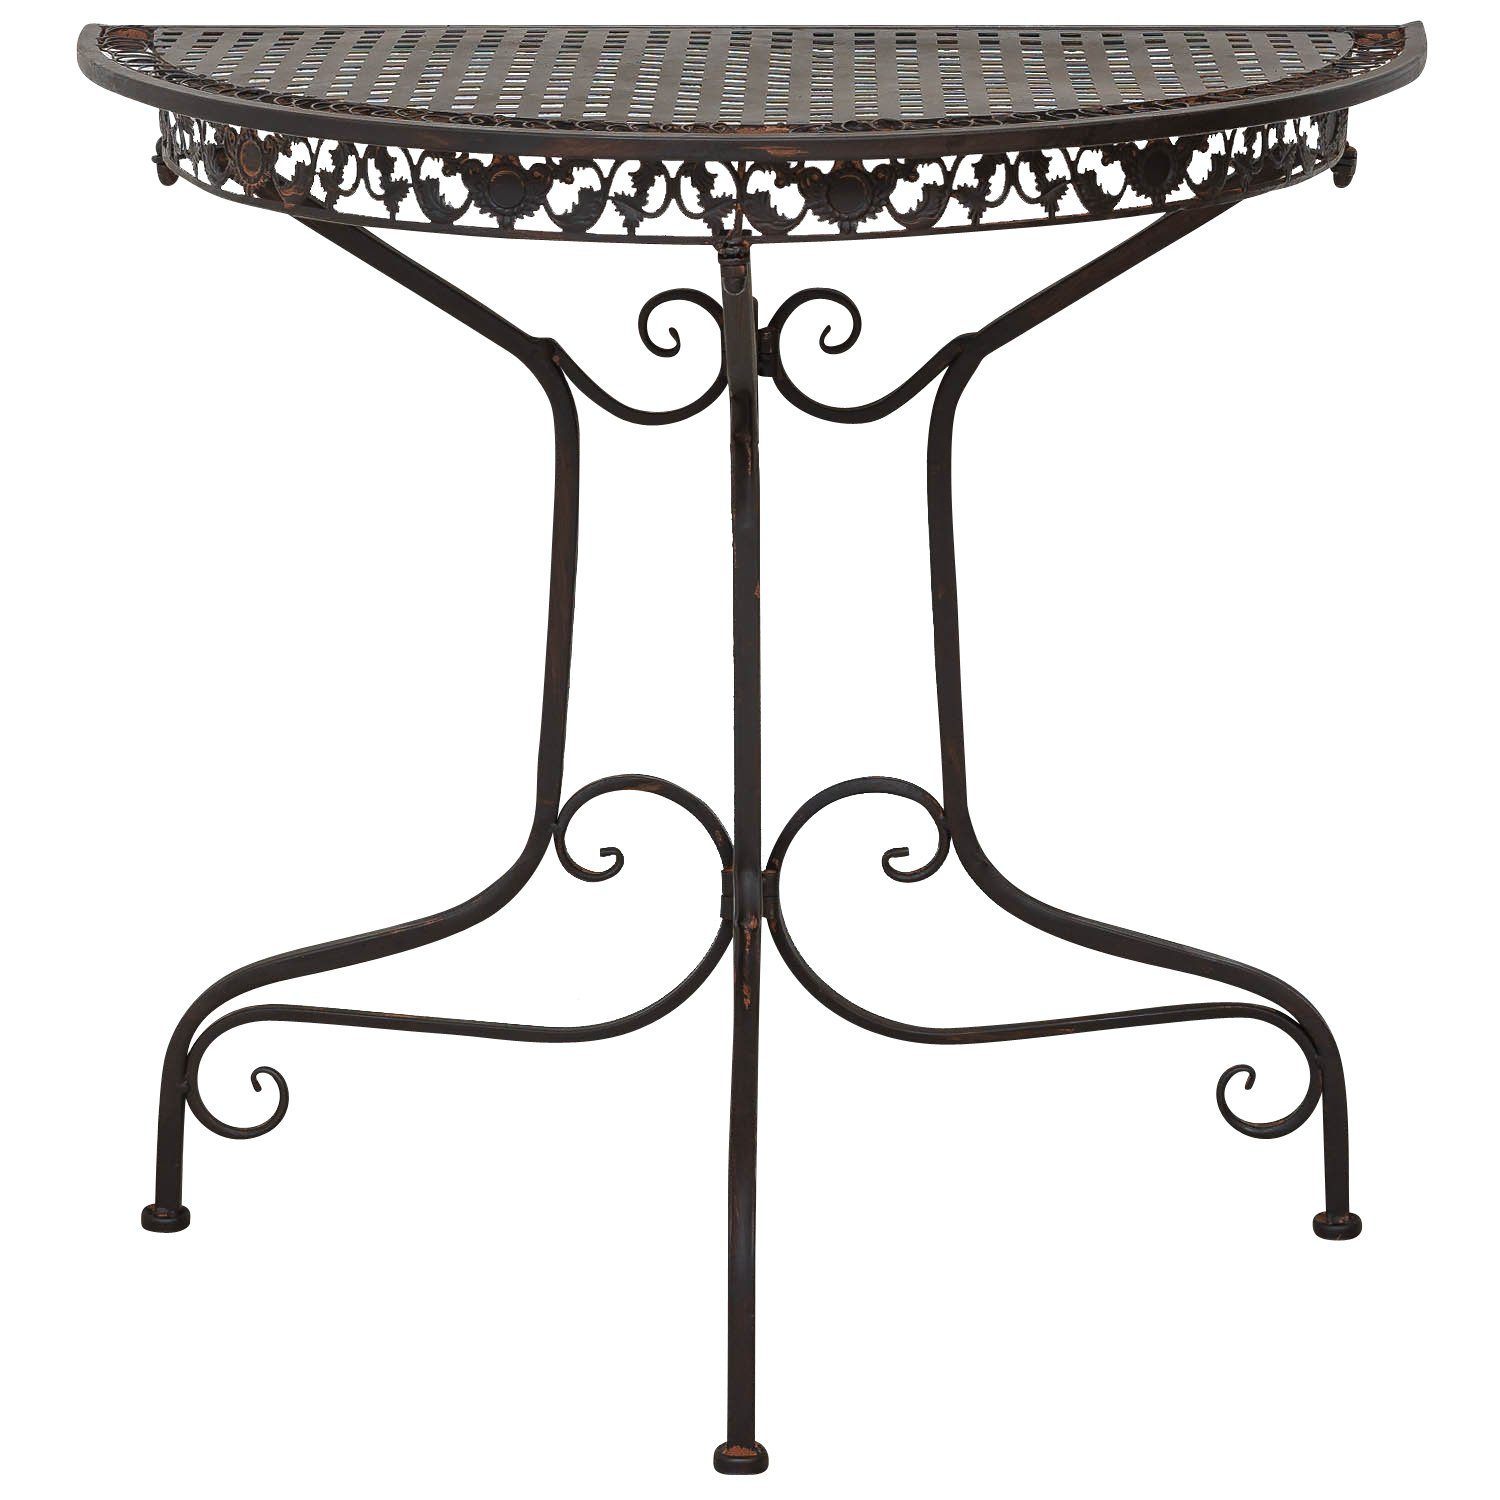 Aubaho Gartentisch Tisch Garten K halbrund Eisen Antik-Stil braun Gartentisch Balkontisch